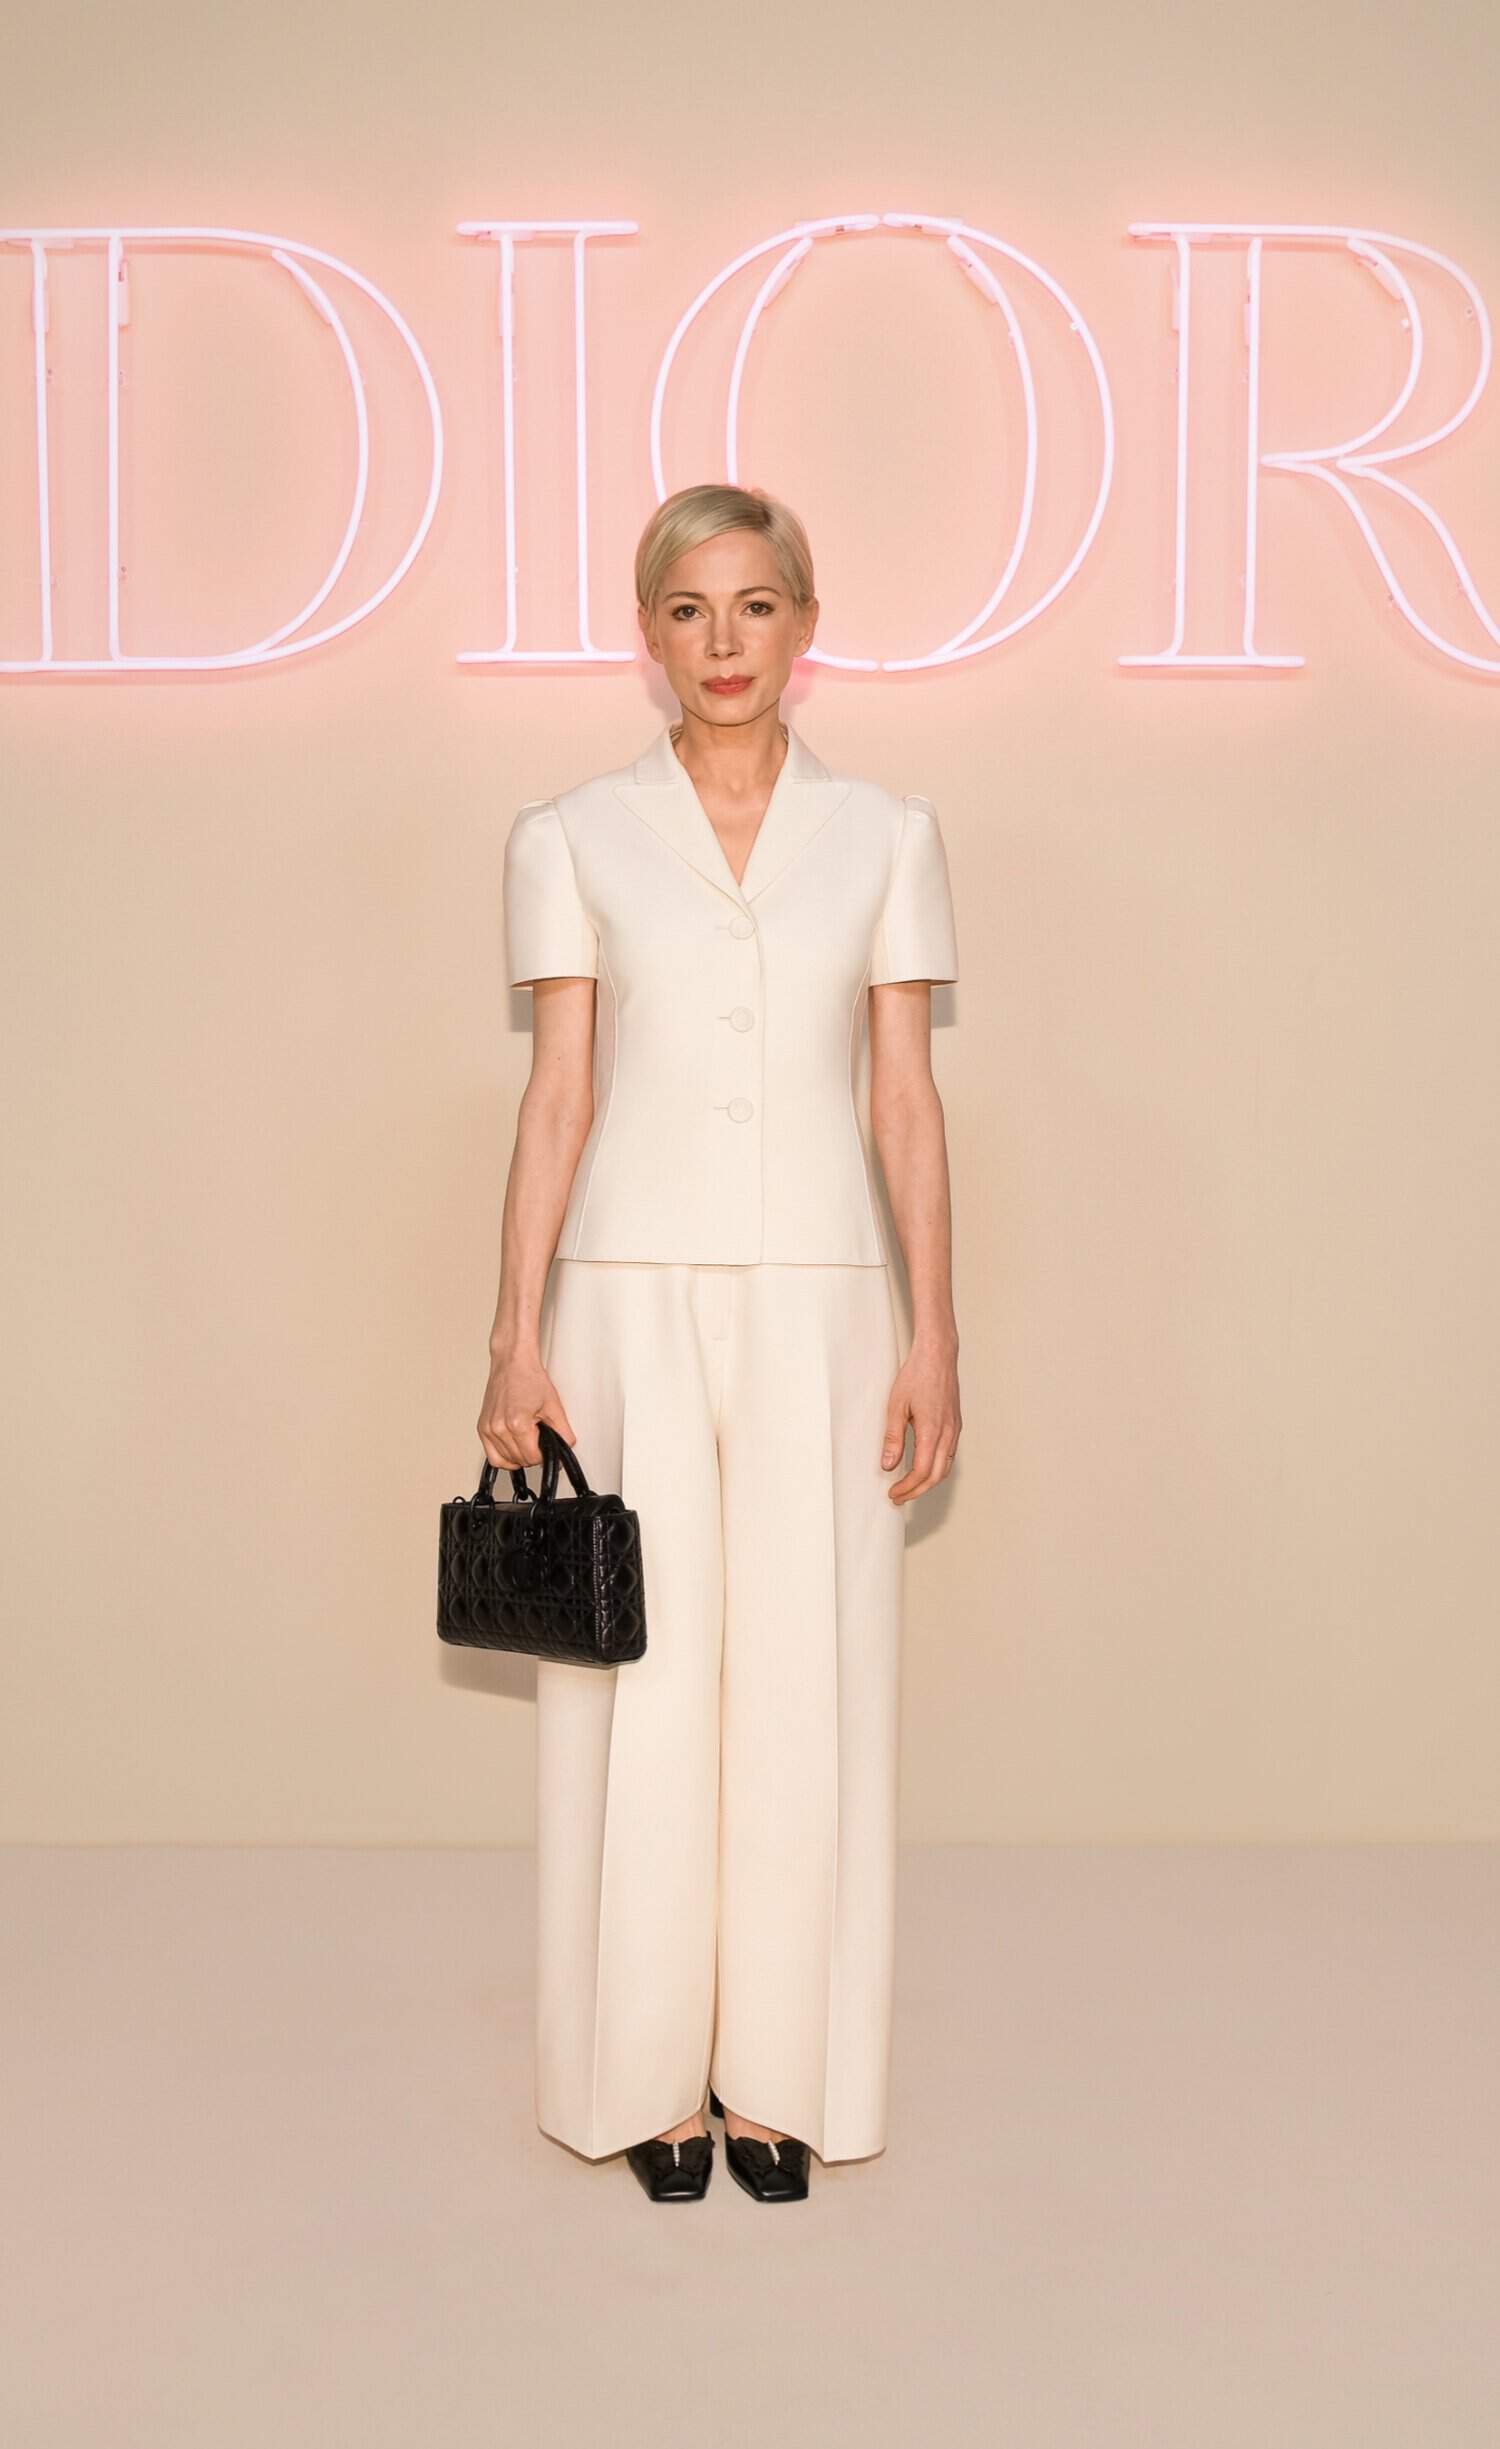 Dior, fashion show, New York City, Michelle Williams